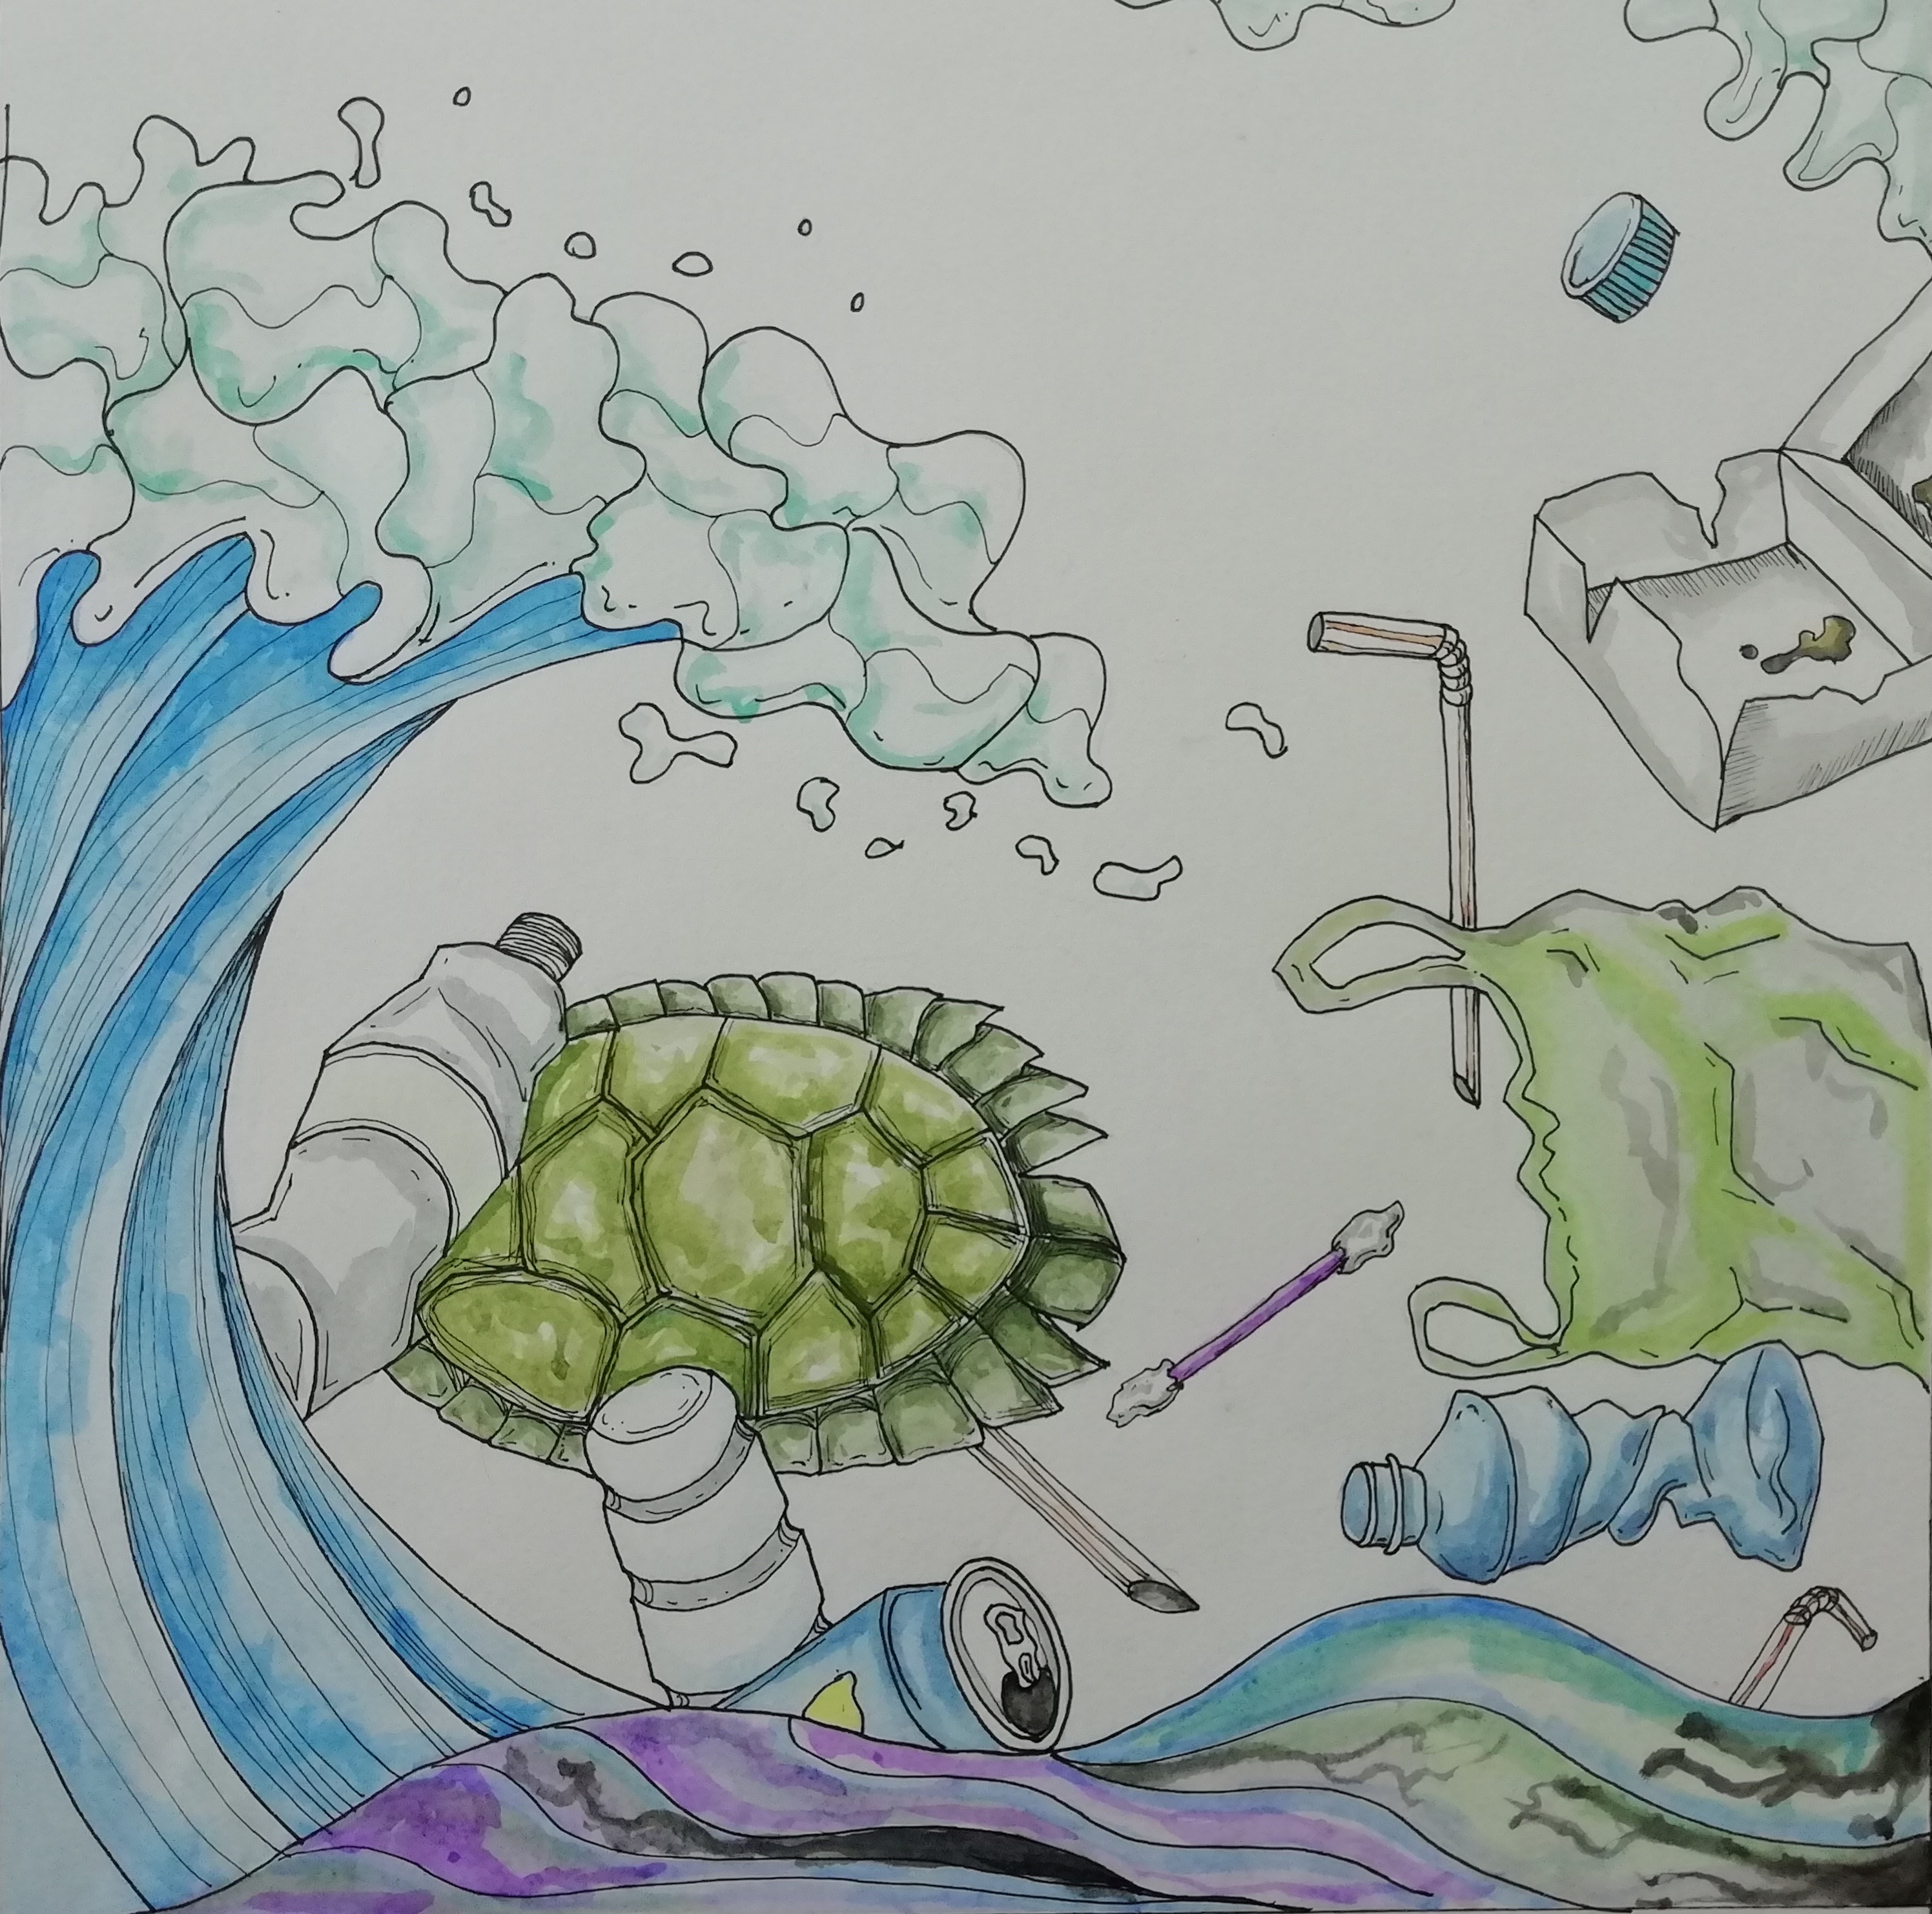 海底垃圾简笔画 污染图片